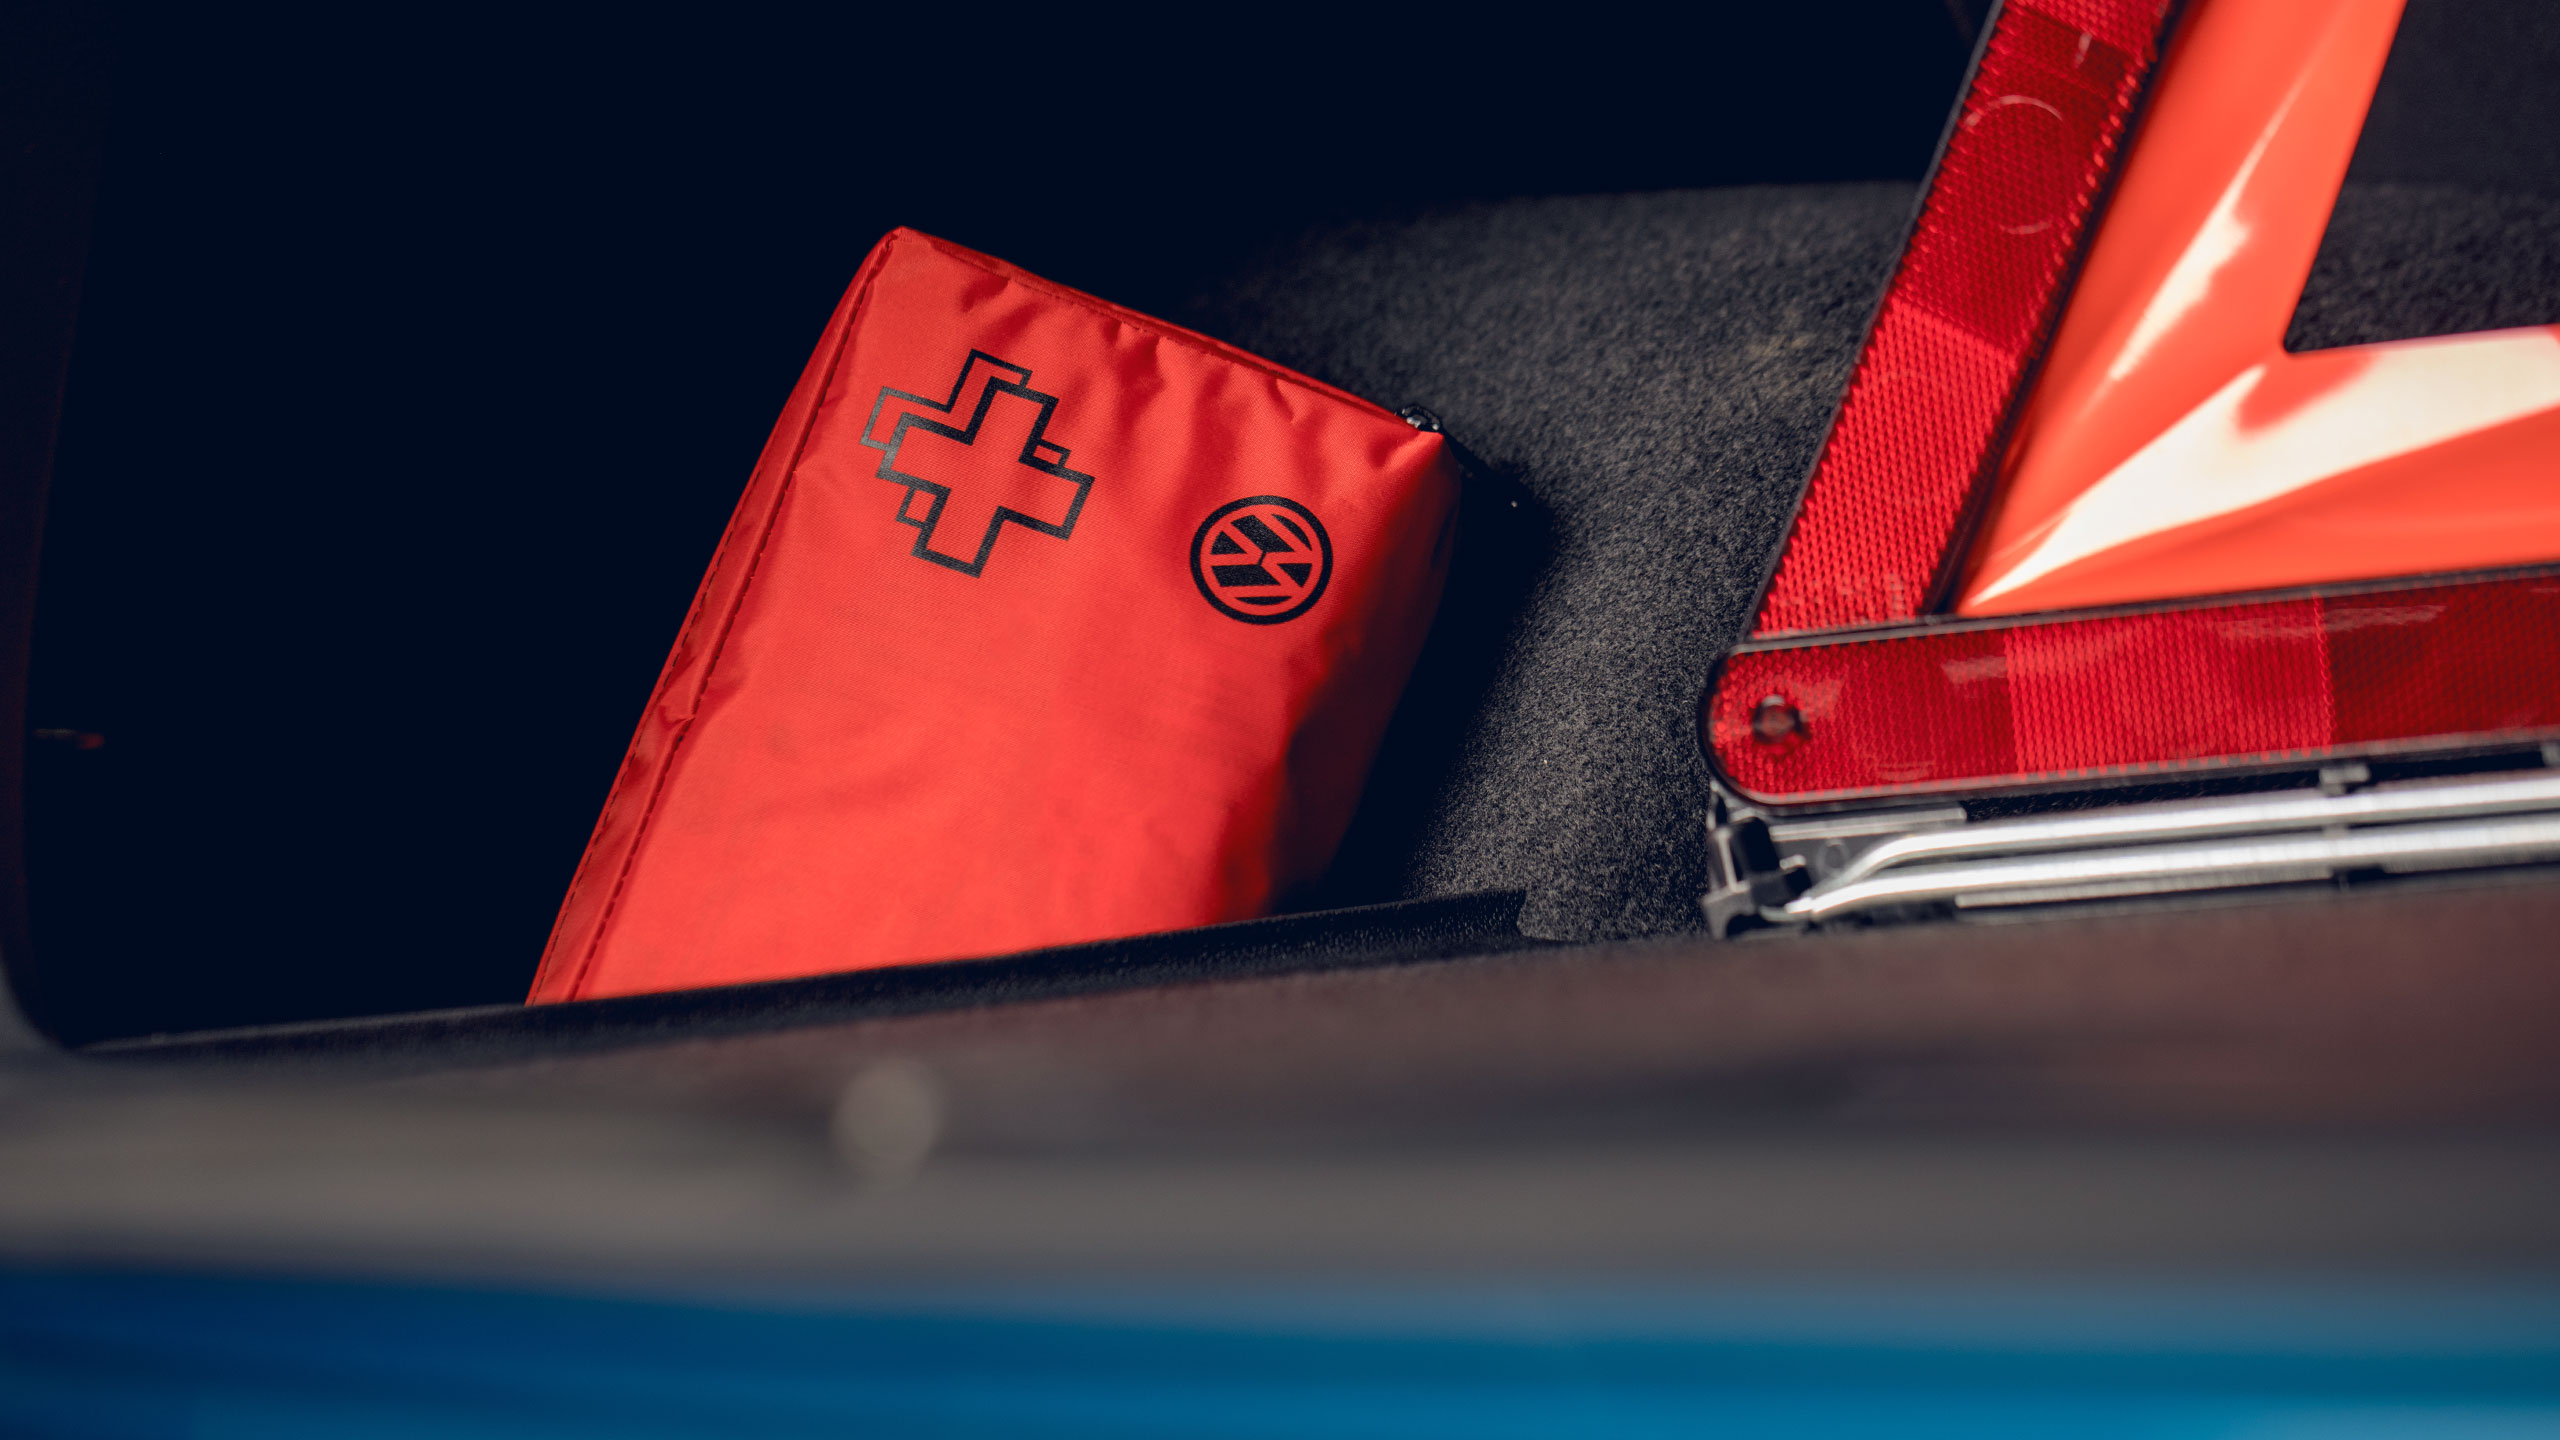 Um kit de primeiros-socorros e o triângulo de pré-sinalização da Volkswagen Acessórios na bagageira do carro.